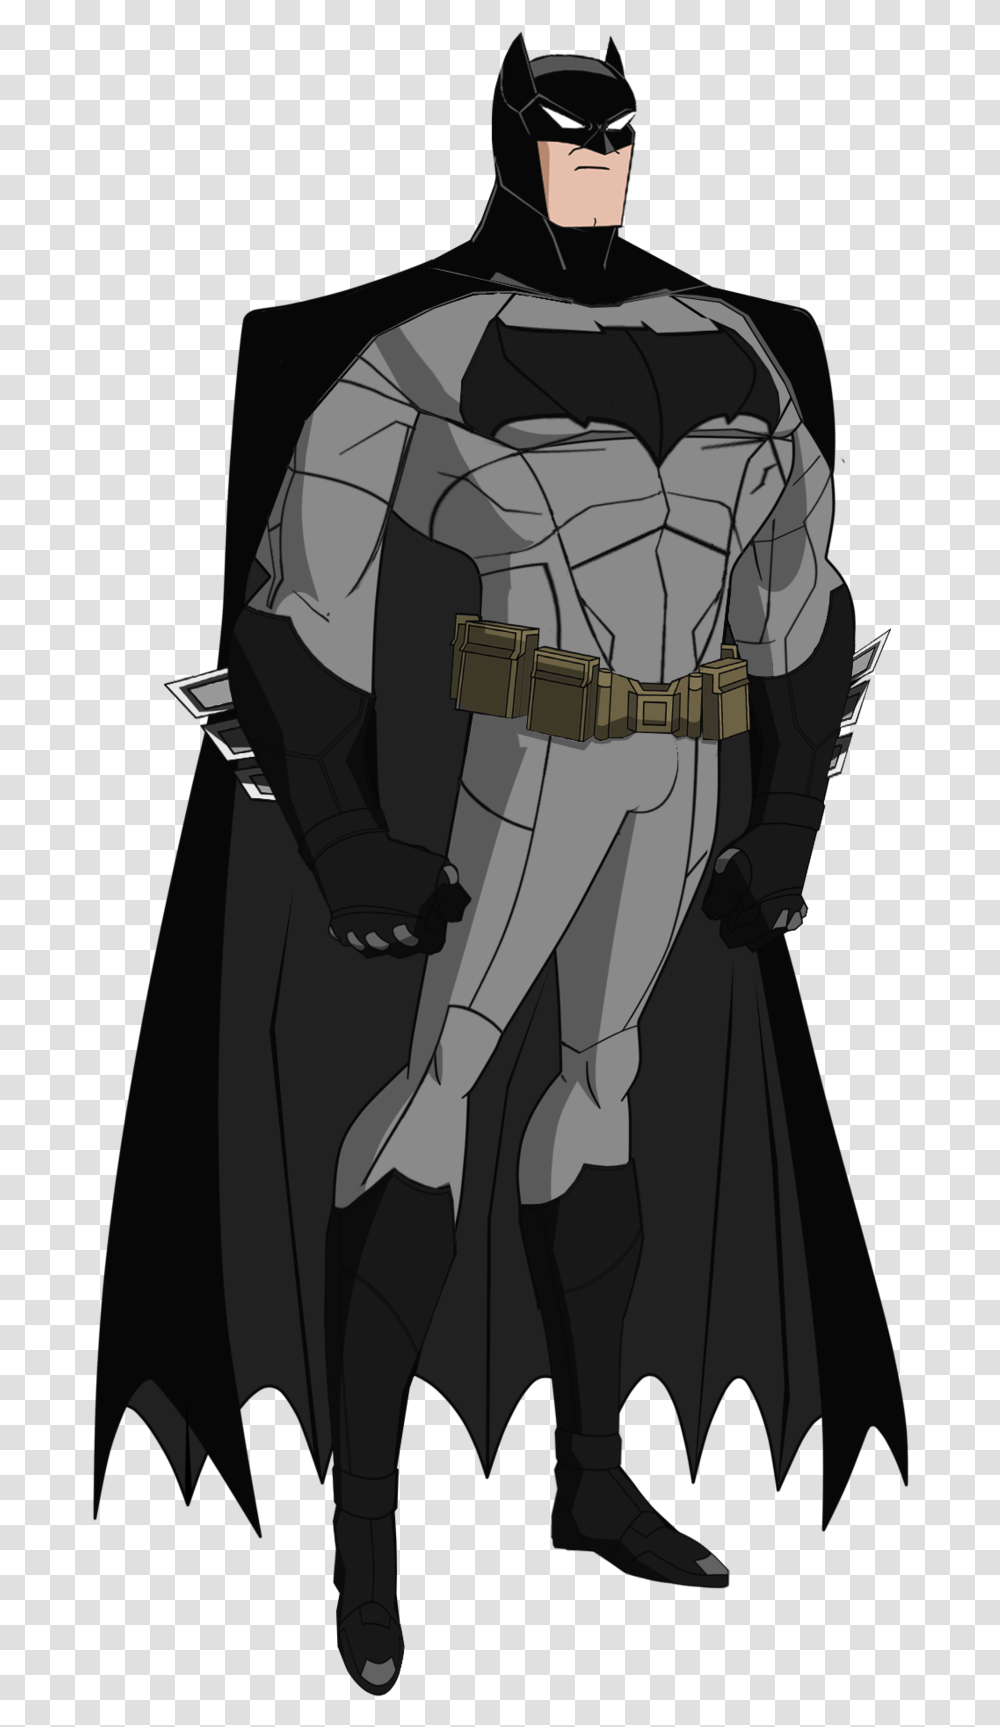 Justice League Batman Cartoon Justice League Cartoon Batman, Comics, Book, Manga, Person Transparent Png